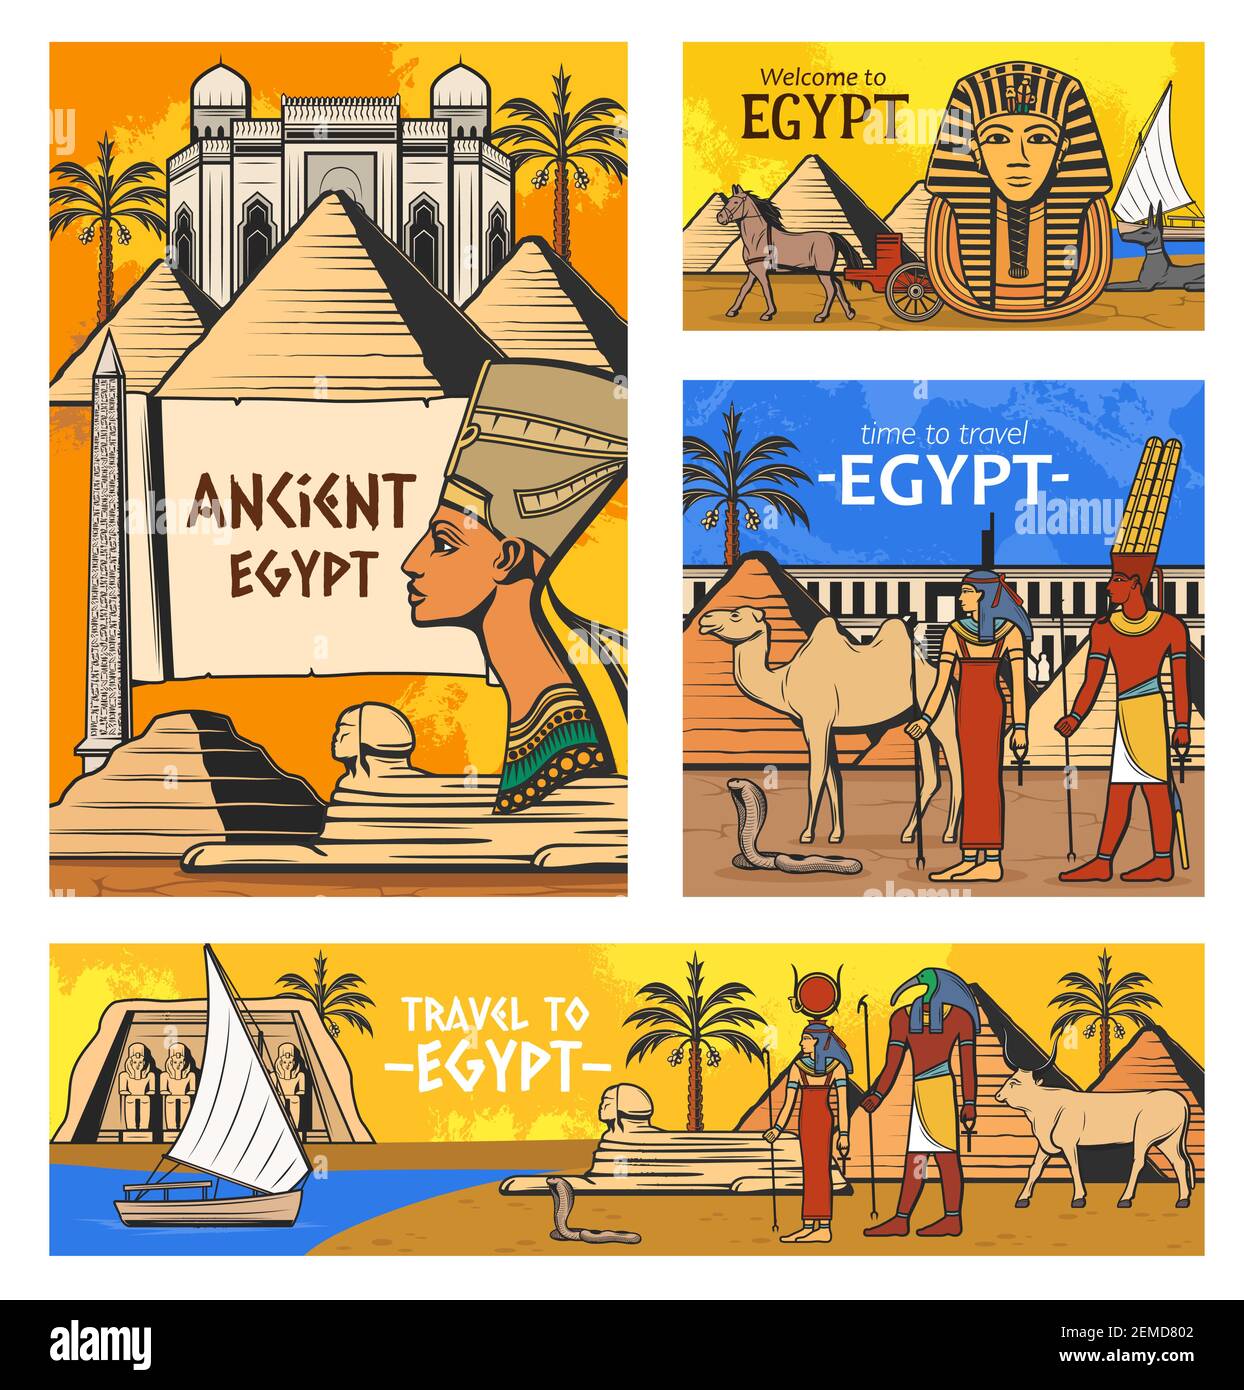 Ägypten Reise-Vektor-Design mit alten ägyptischen pharao Pyramiden und Götter. Geschichte und Kultur Symbole der ägyptischen Mythologie und Religion, Sphinx, ca. Stock Vektor